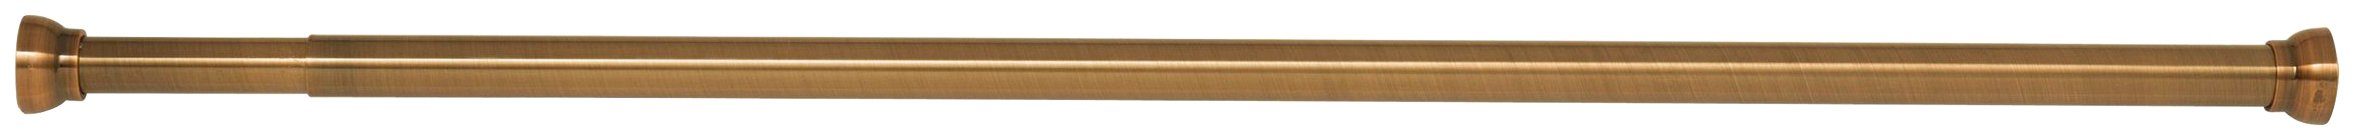 Klemmstange Kreta, spirella, Ø 21 mm, kürzbar, mit Bohren, Aluminium, für Duschvorhänge, Länge 75-125 cm gold